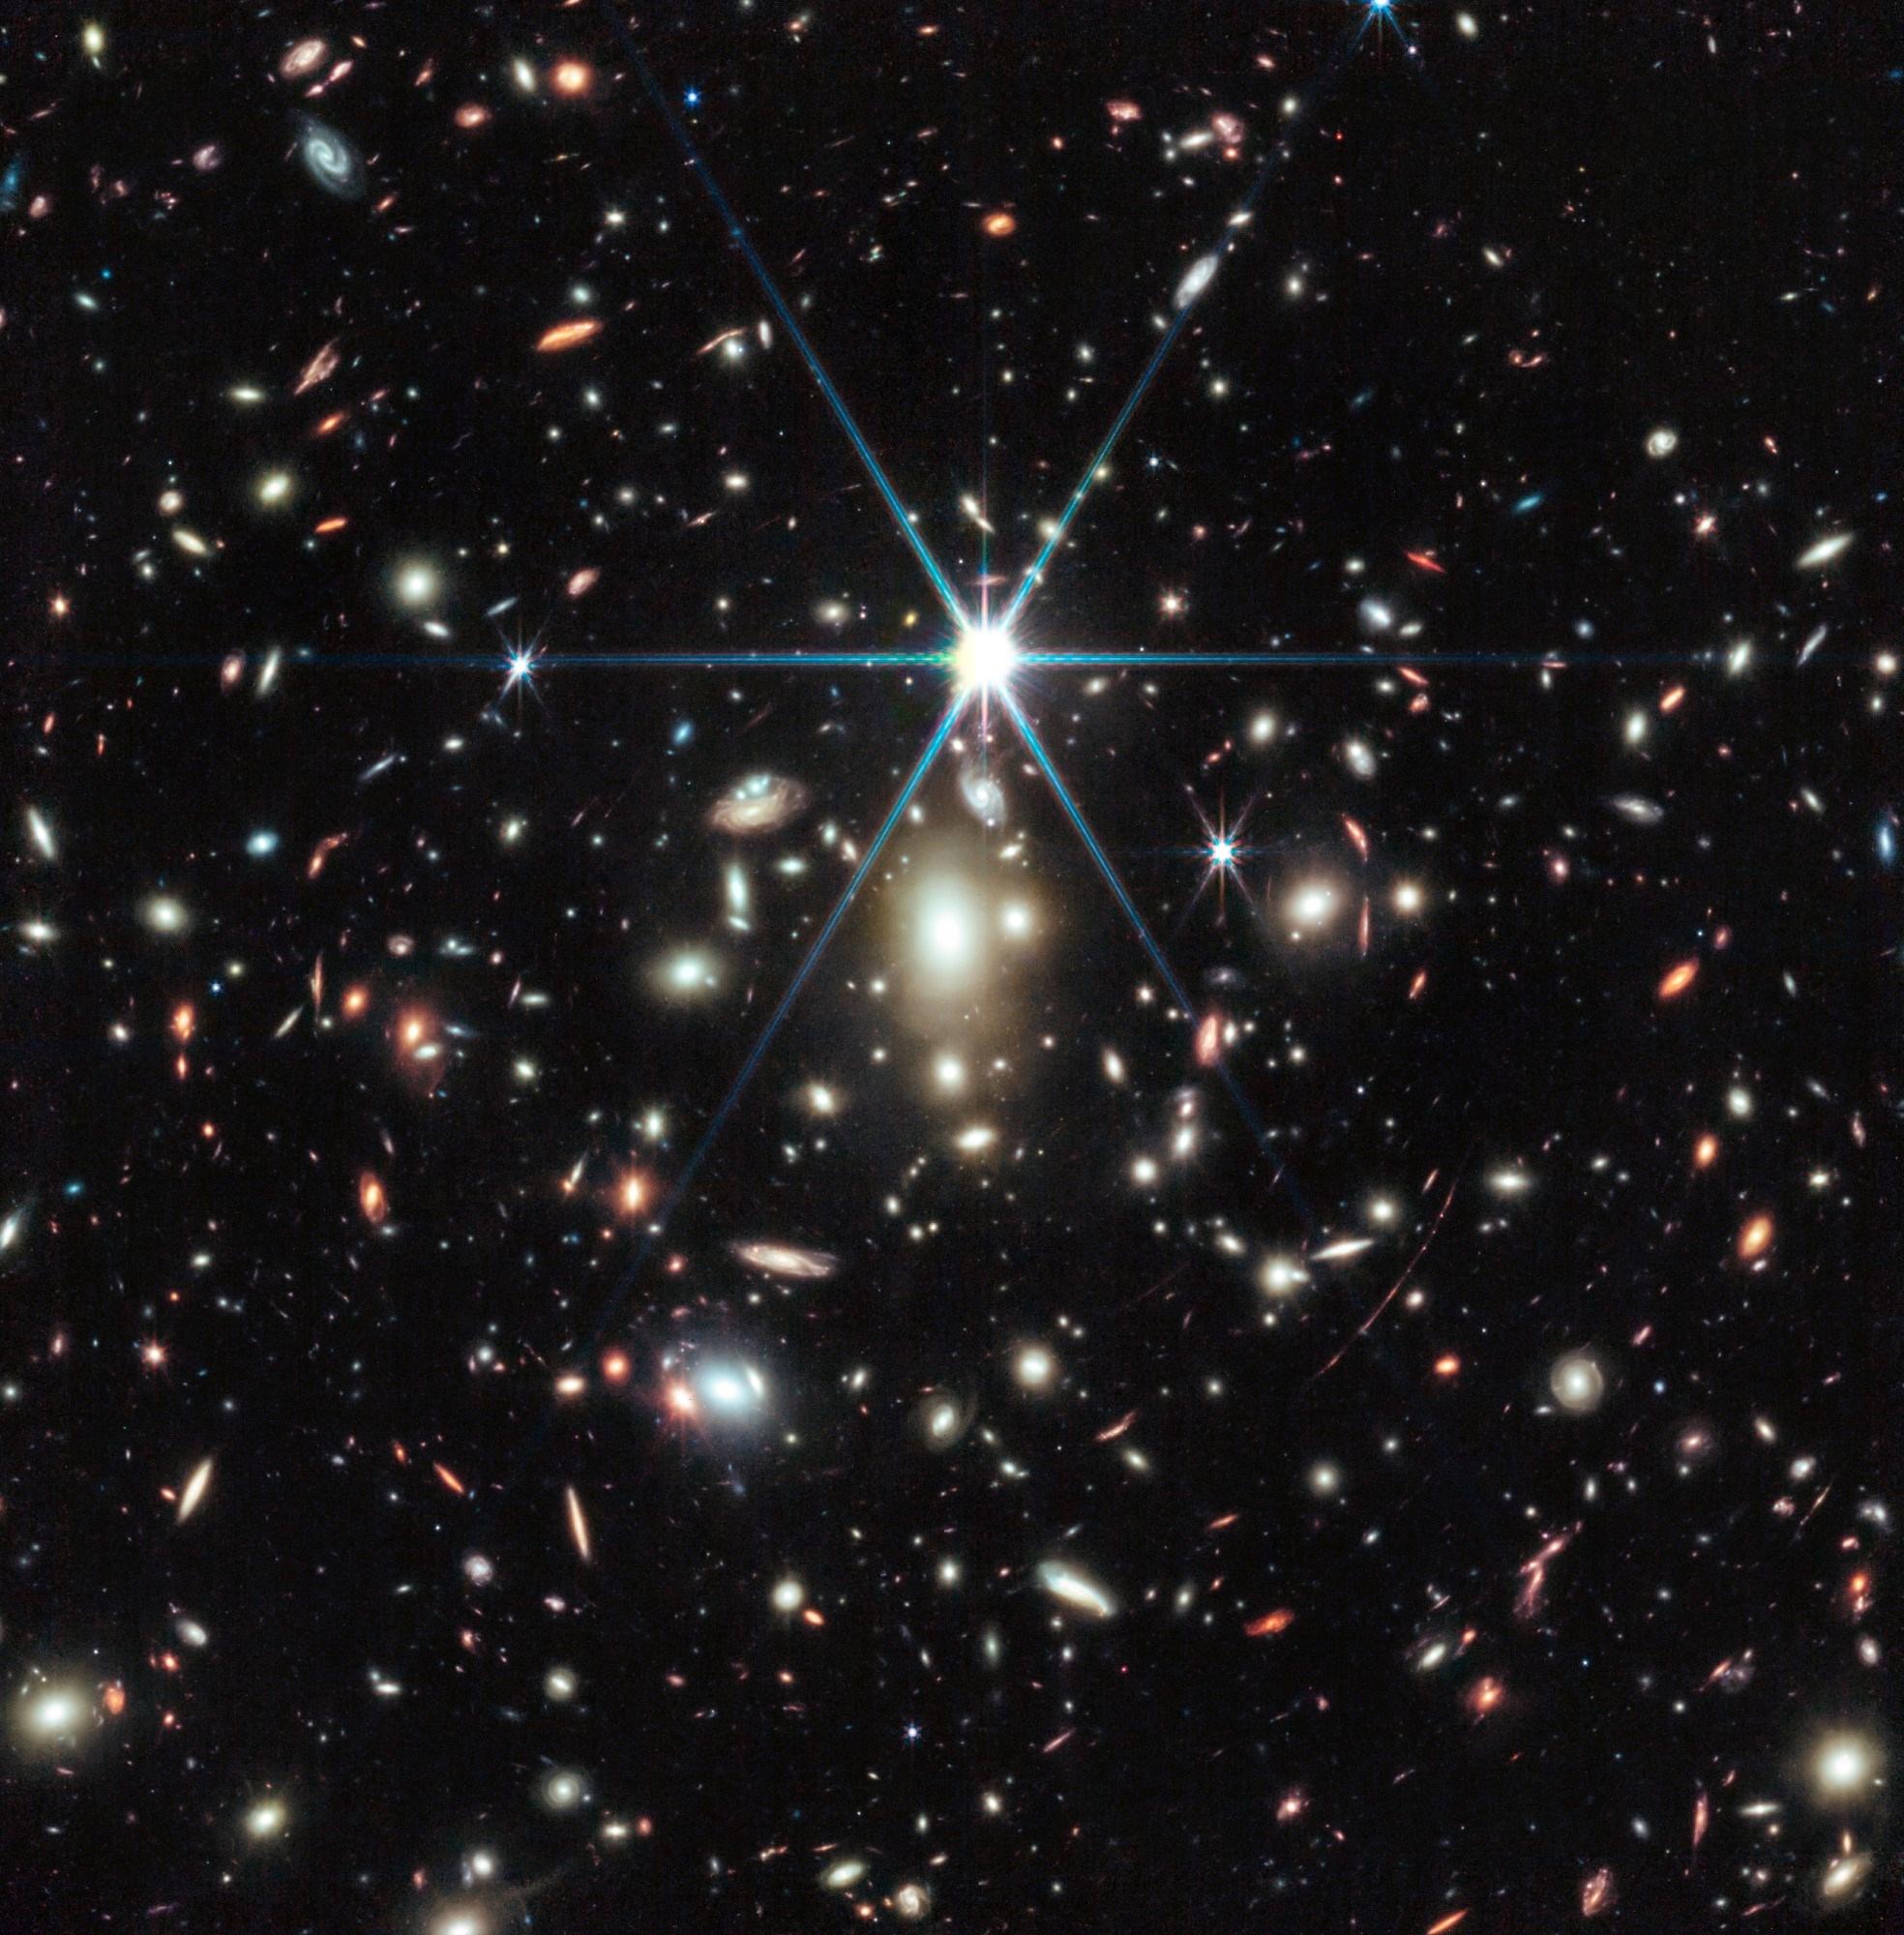 Earendel: Şimdiye kadar keşfedilen en uzak yıldız net şekilde görüntülendi